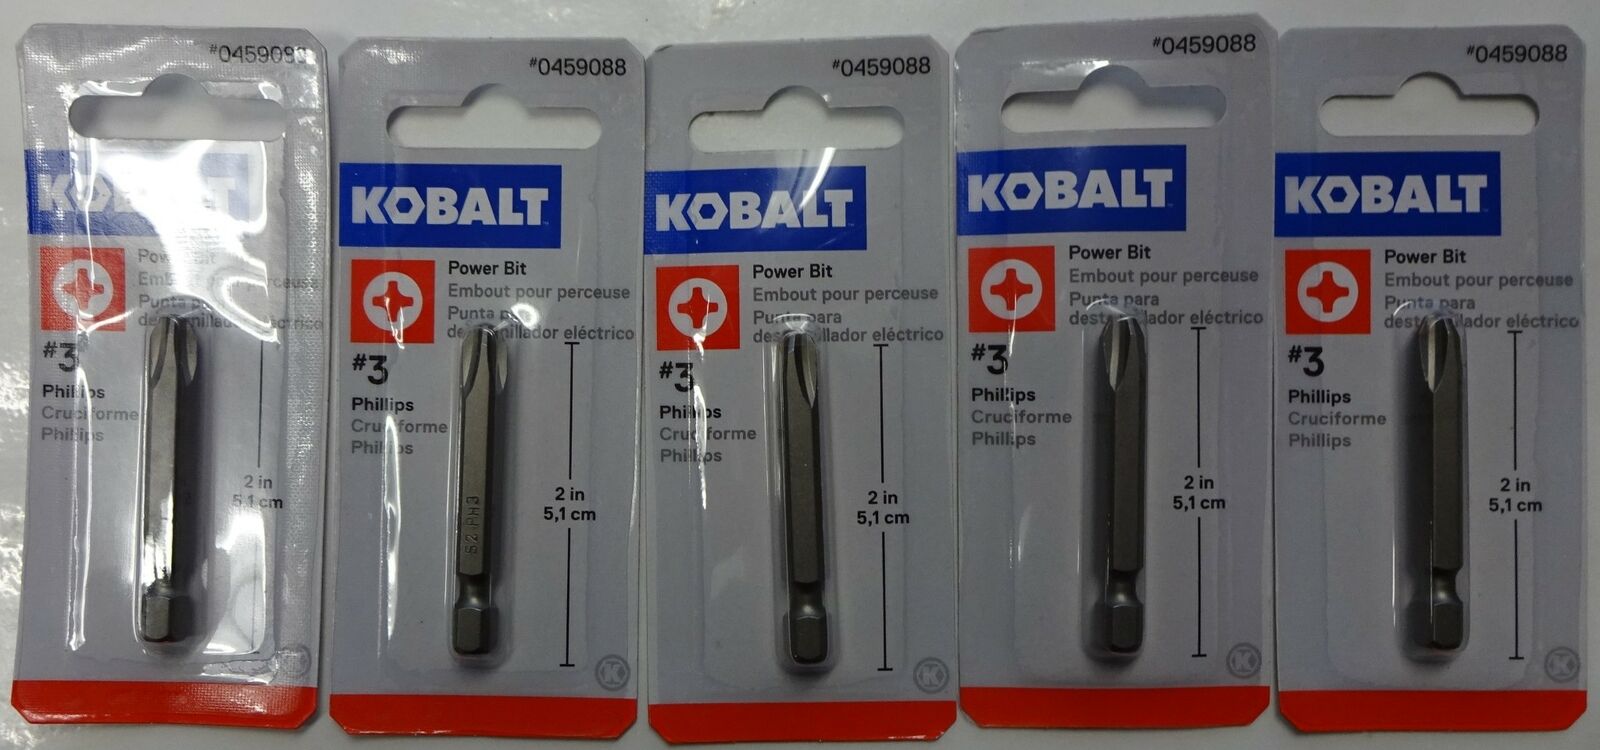 Kobalt 0459088 #3 Phillips 2” Power Bit 1873521 5 packs